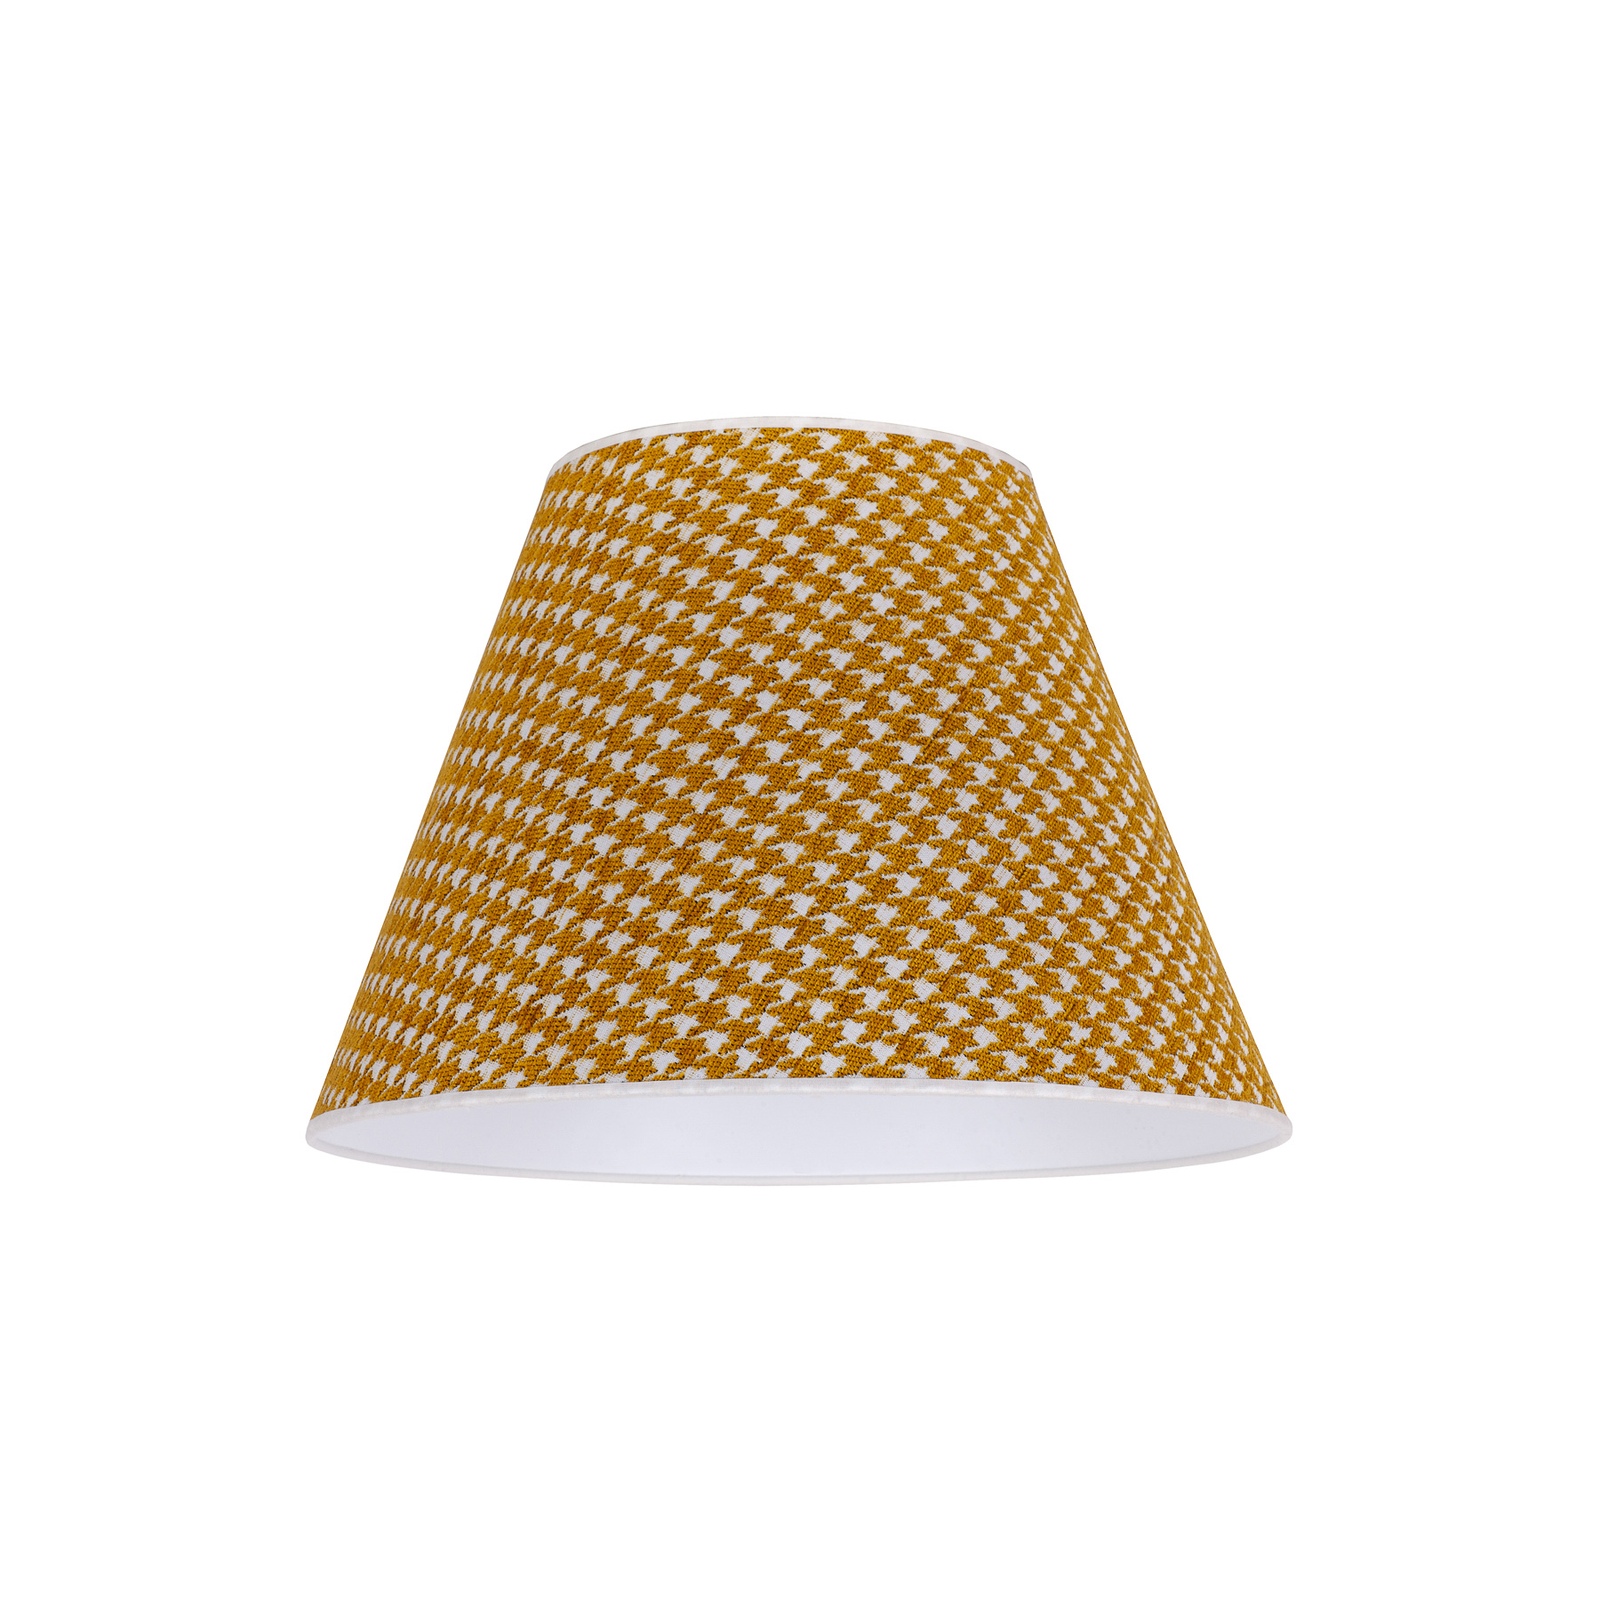 Stínidlo na lampu Sofia 26 cm, kohoutí stopa žlutá